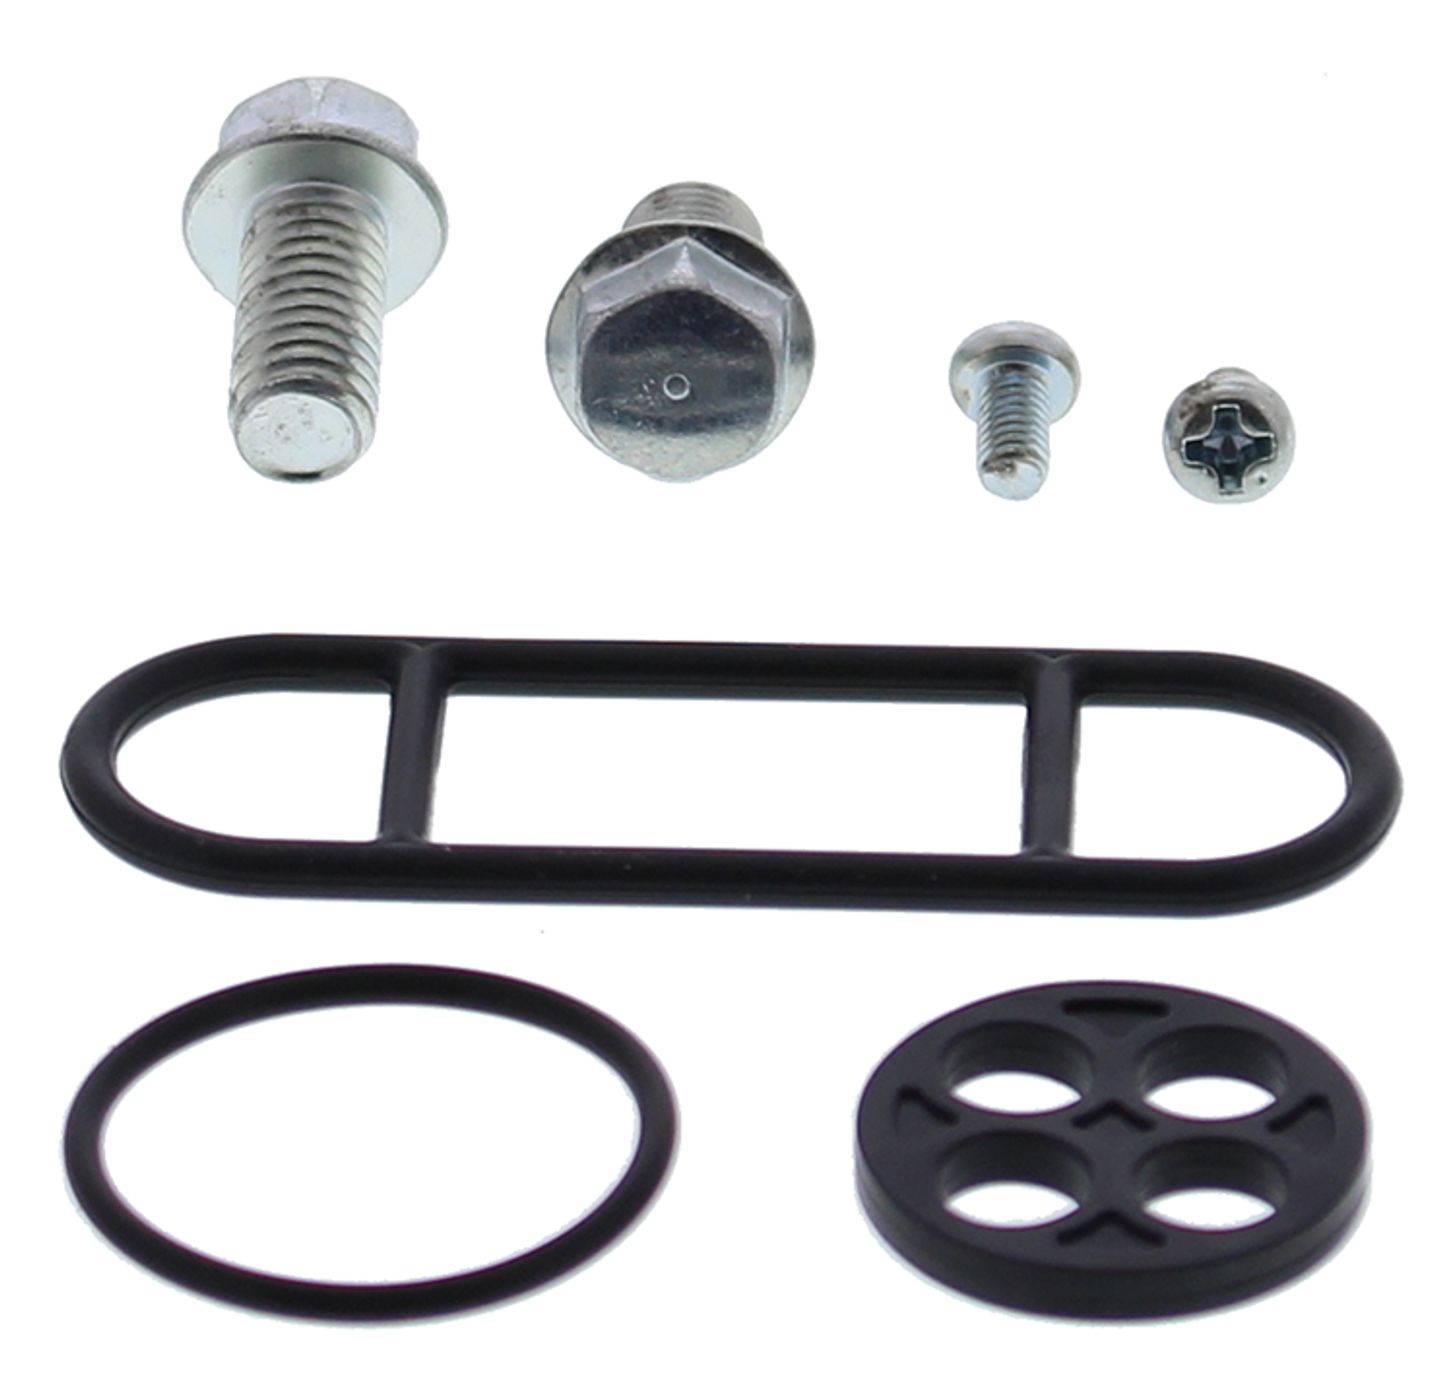 Wrp Fuel Tap Repair Kits - WRP601079 image